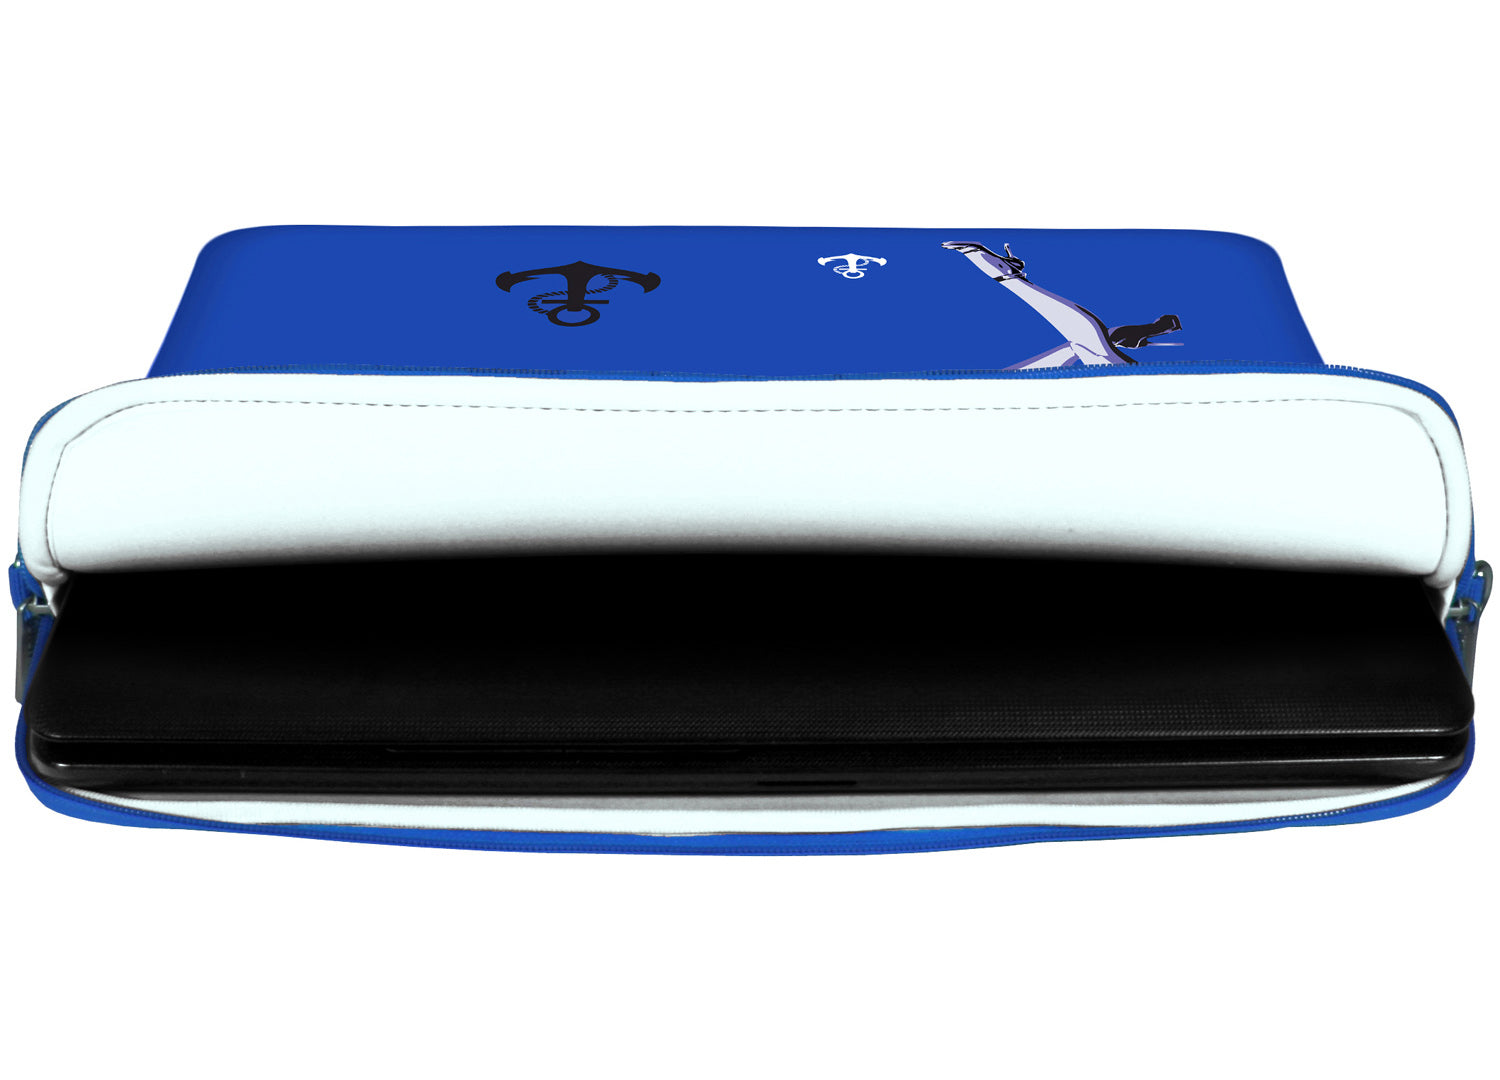 Innenansicht mit Schutzlippen der LS121 Jacky Designer Tasche für Laptop in weiß aus wasserabweisendem Neopren